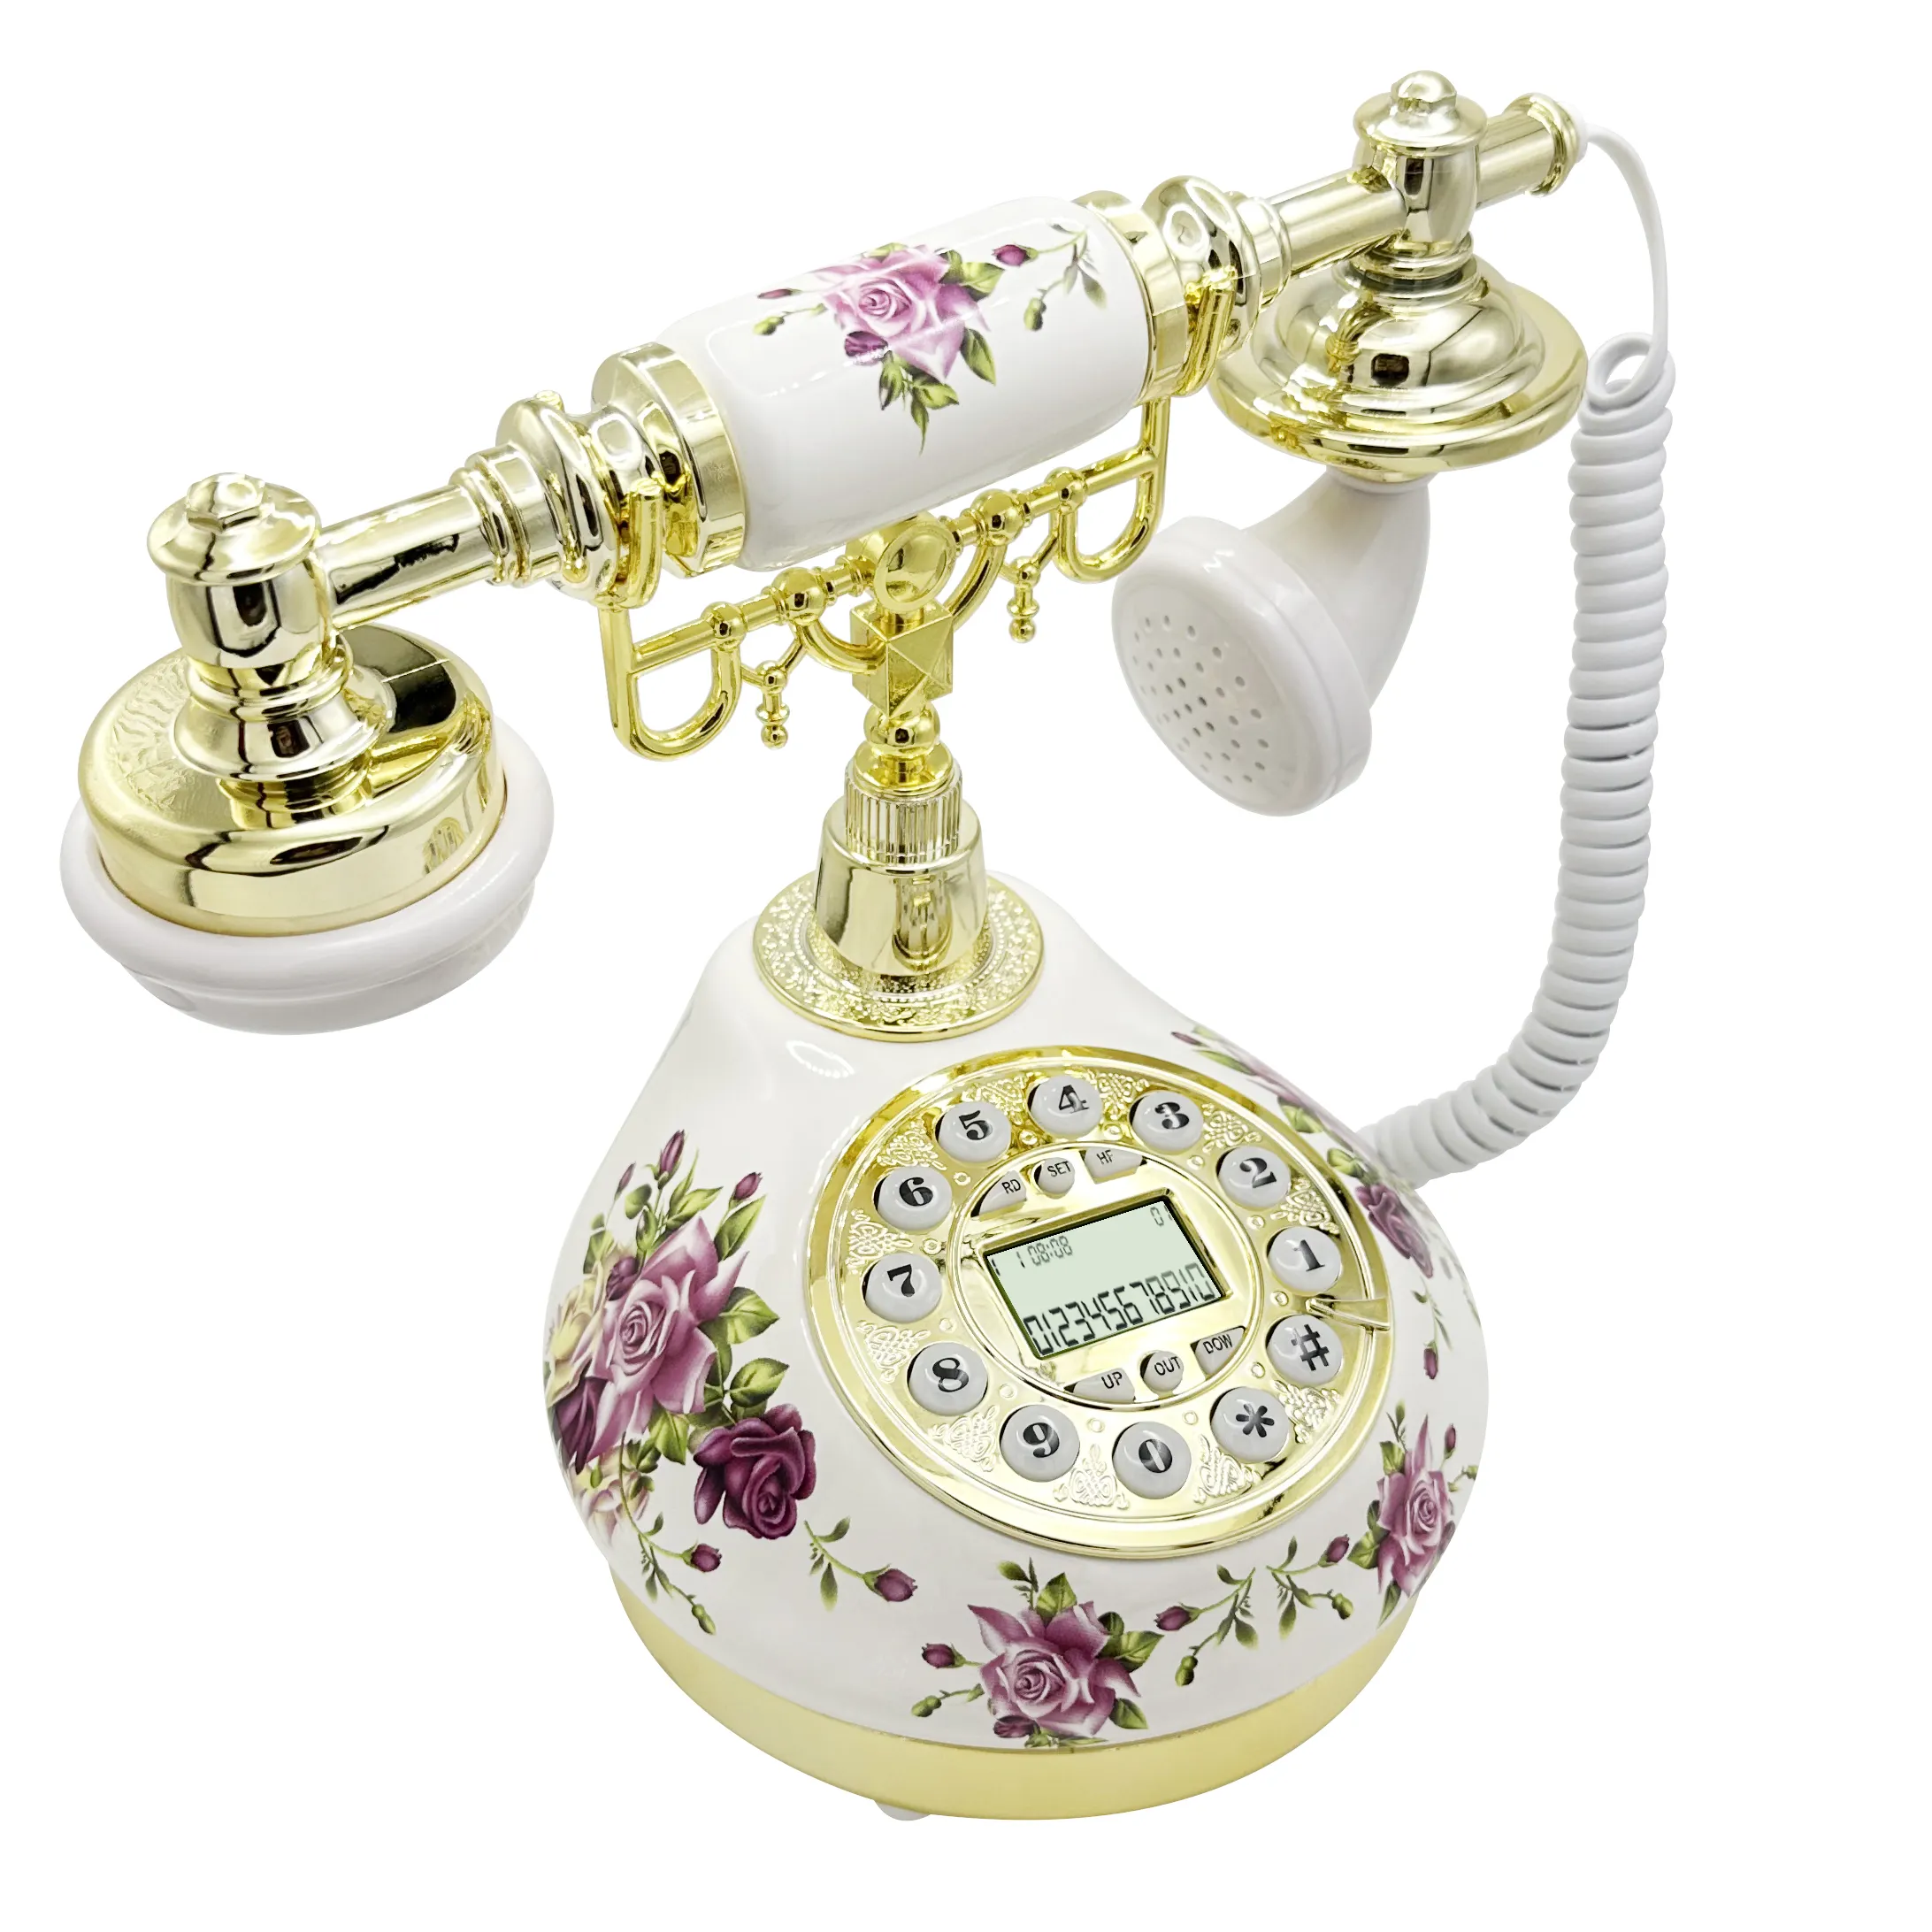 Filaire Bureau Maison Multifonctionnel Un téléphone avec identification de l'appelant Ligne fixe Antique téléphone ensemble audio livre d'or téléphone vintage